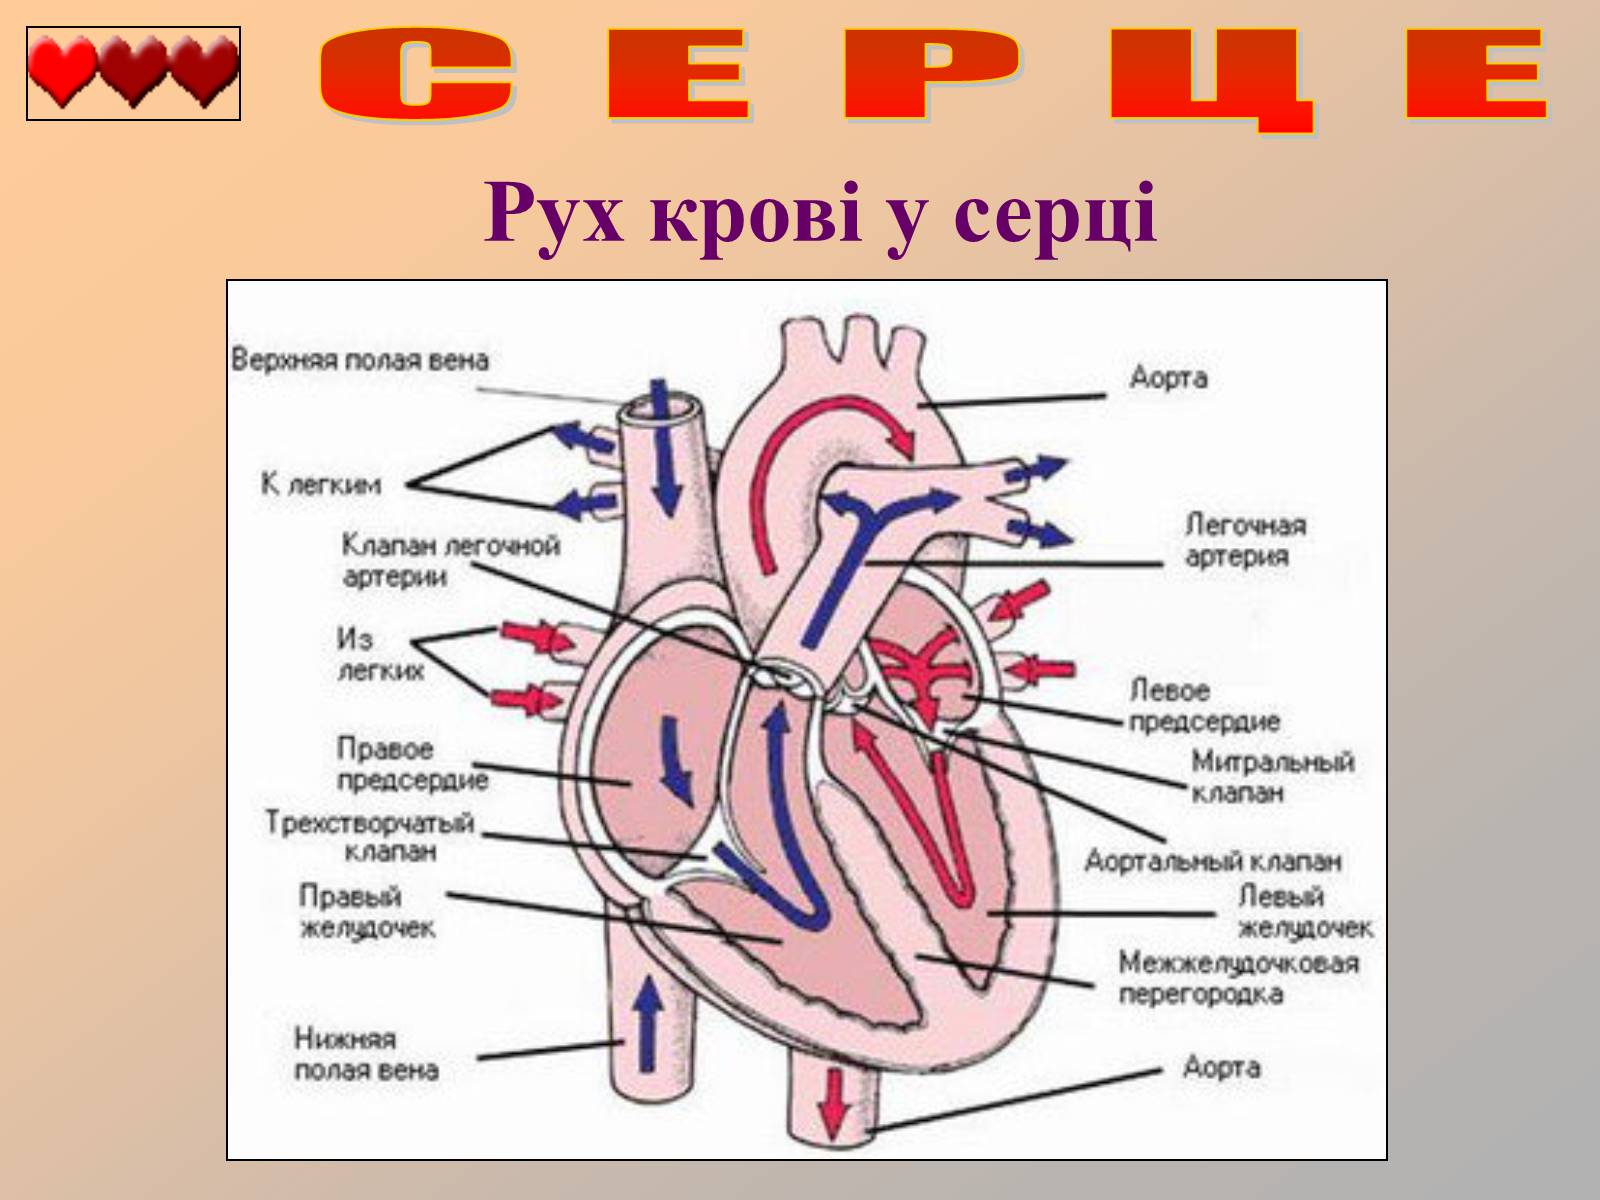 Несет кровь к предсердию. Строение сердца человека схема клапаны. Строение сердца с клапанами схема. Схема внутреннего строения сердца. Строение сердца рисунок.